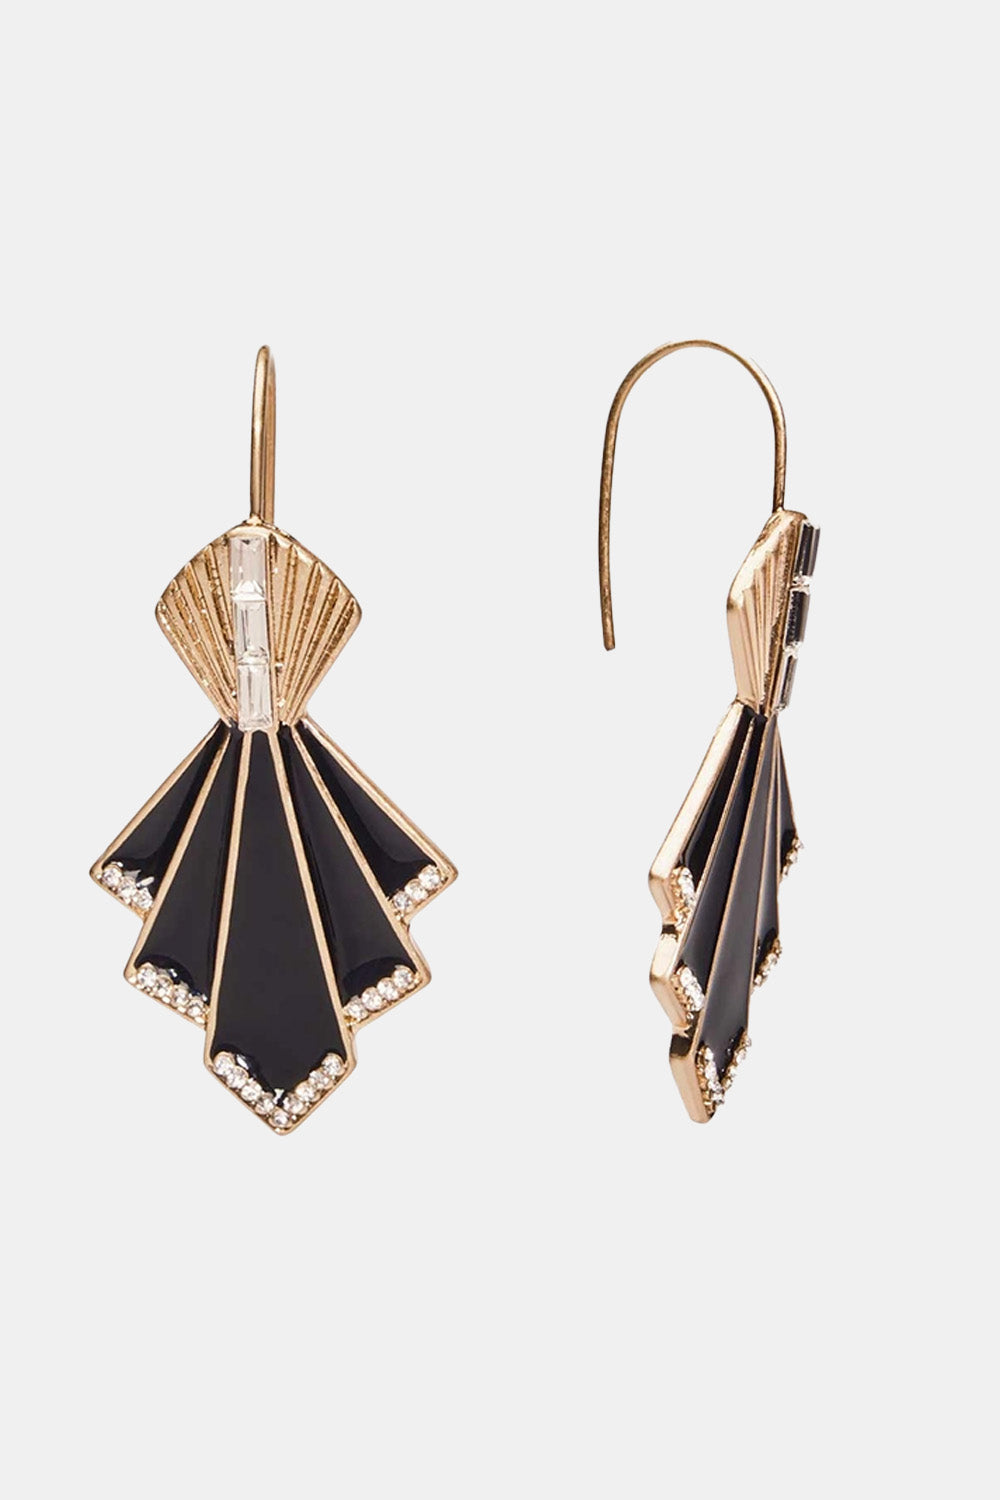 Deco fan earrings in black